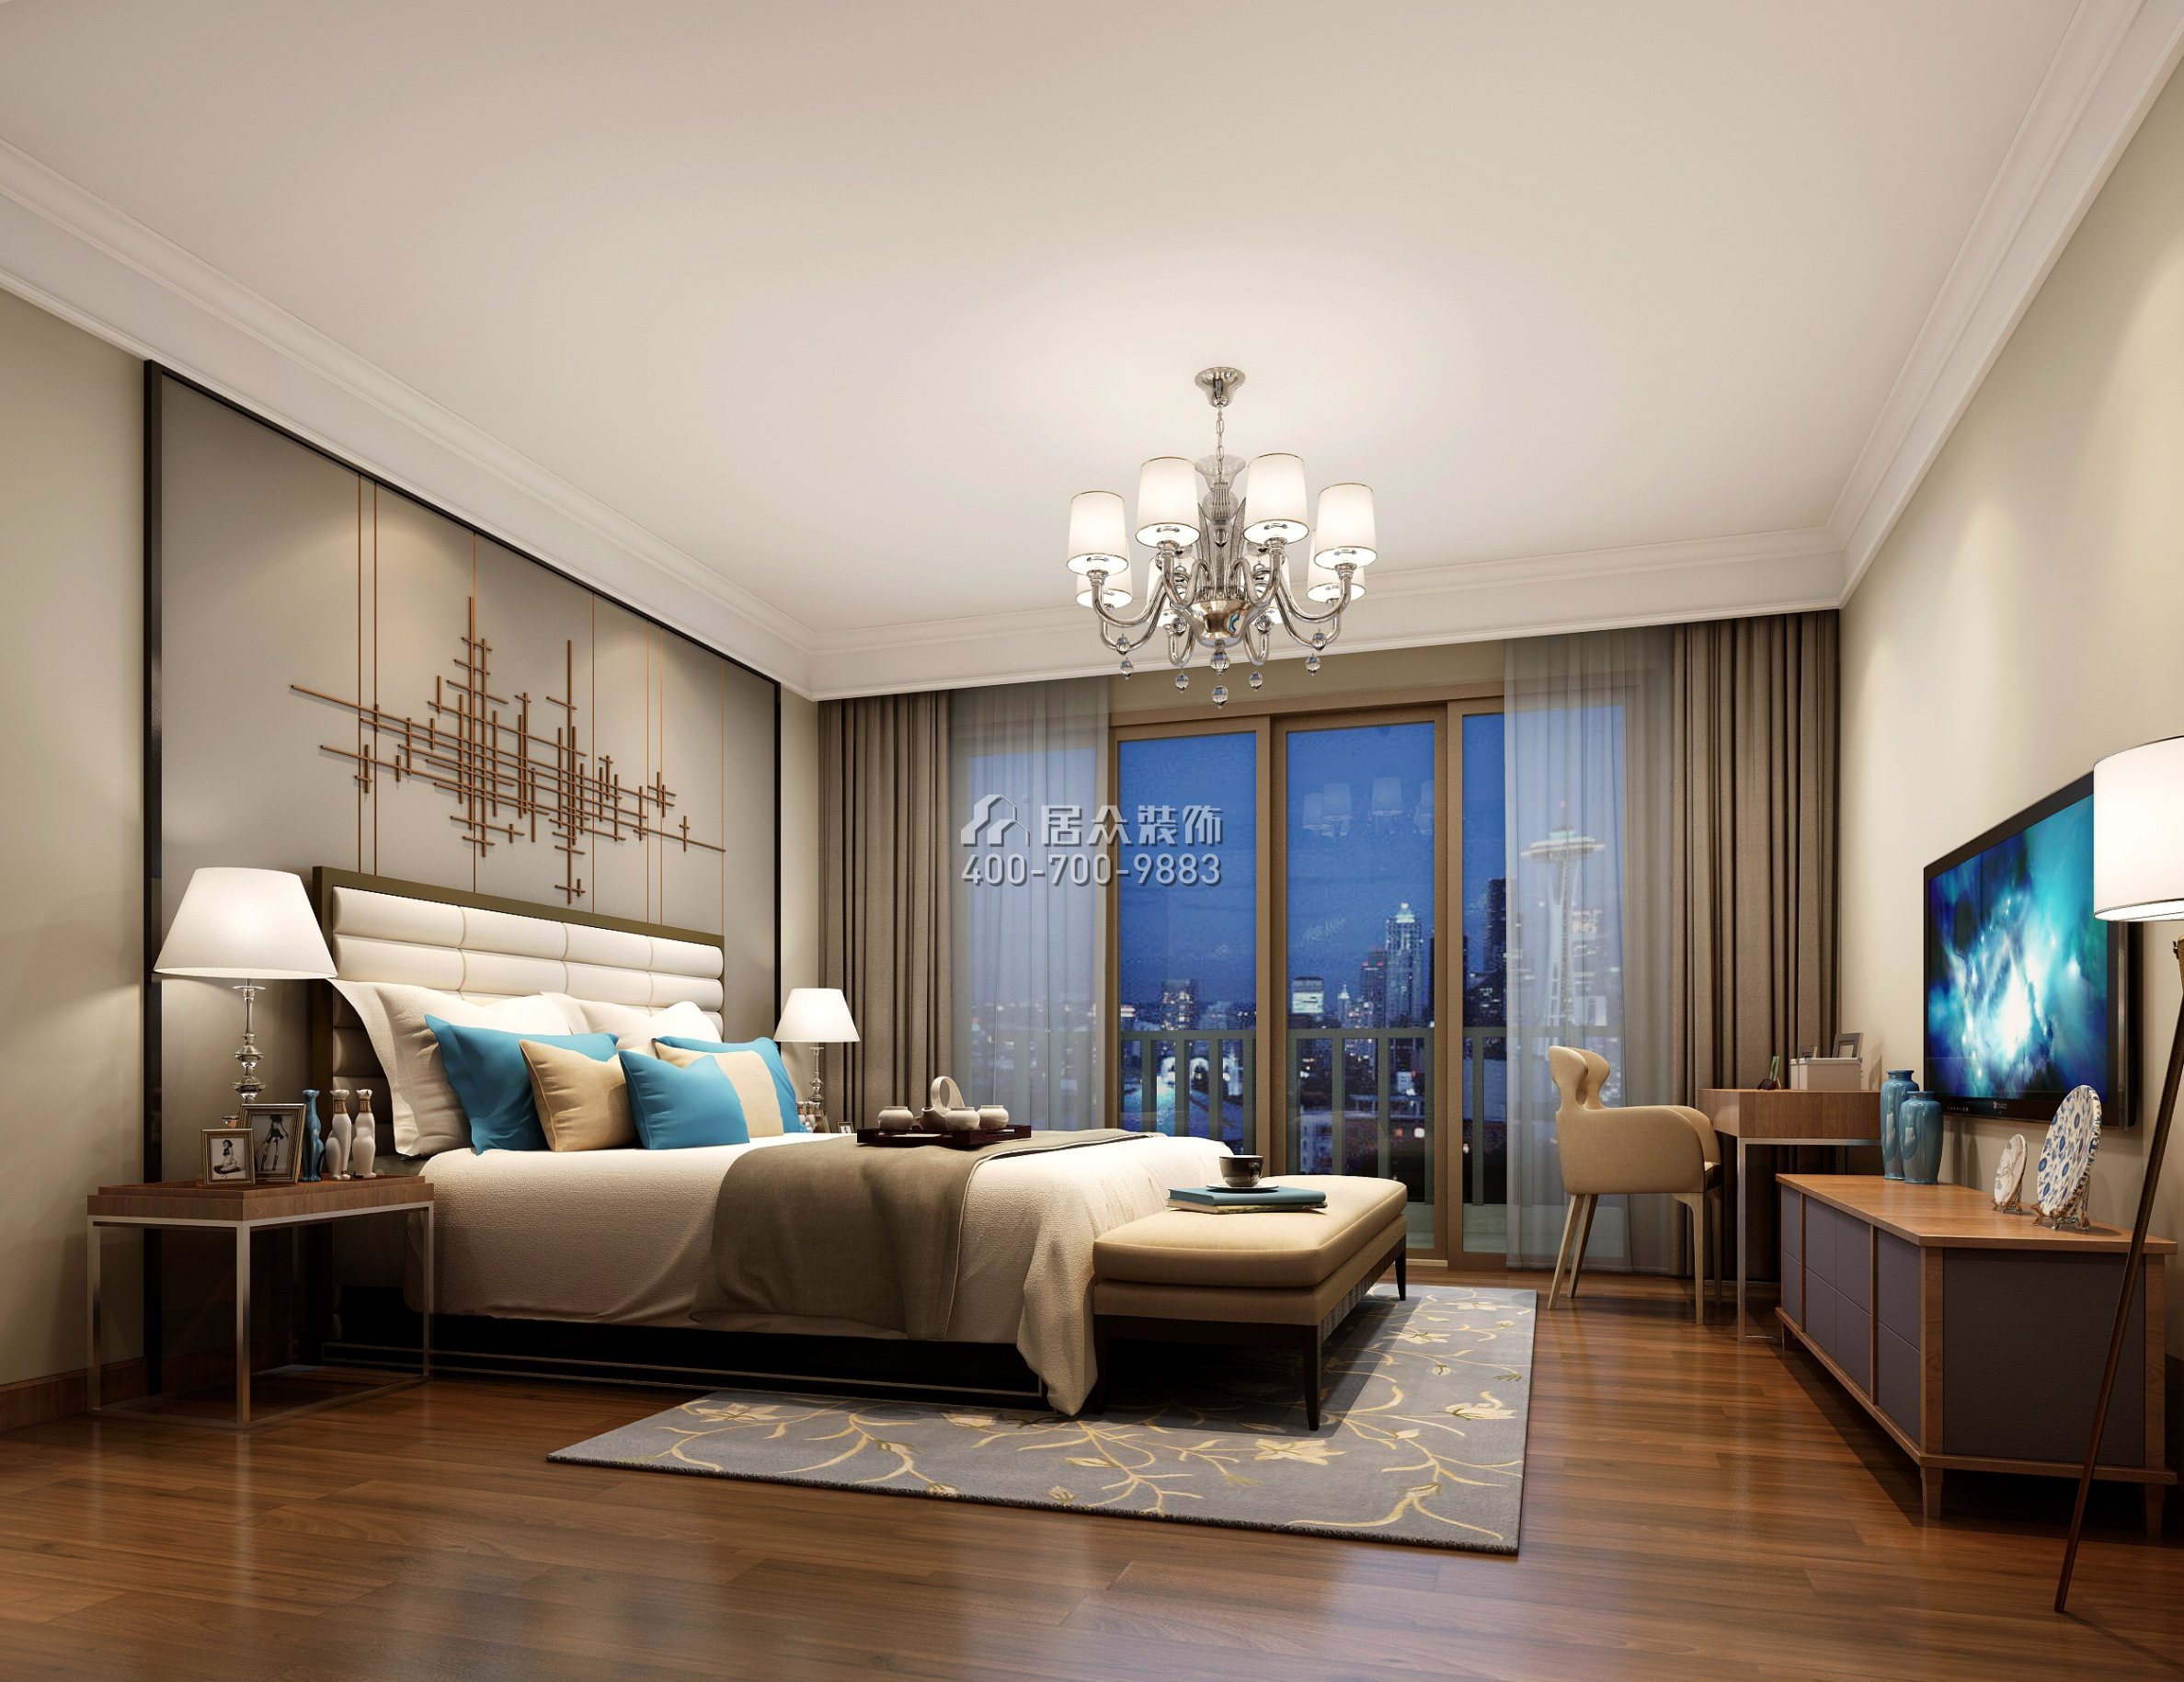 海逸豪庭126平方米現代簡約風格復式戶型臥室裝修效果圖